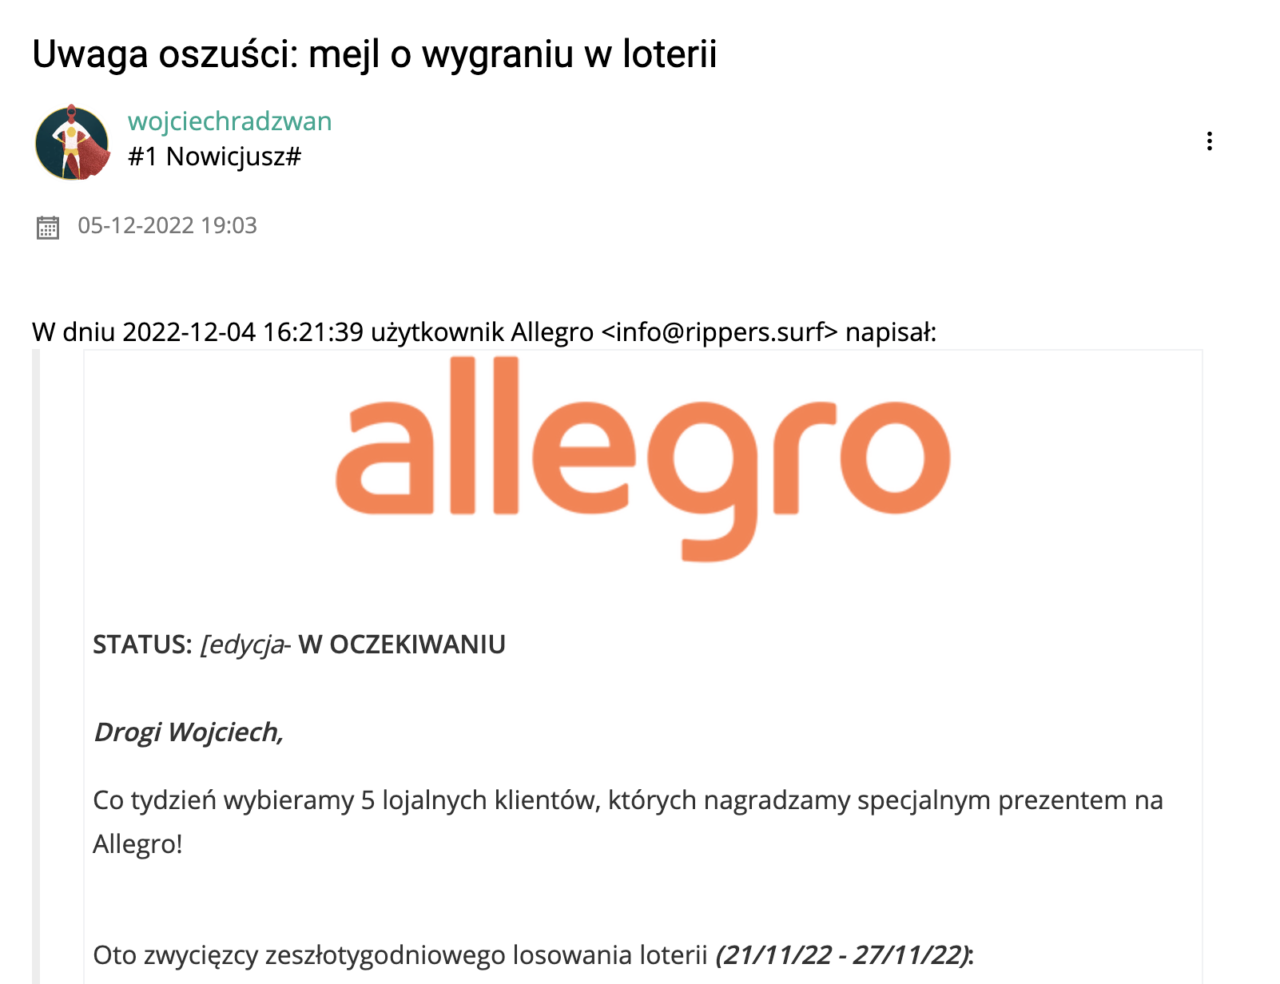 Zrzut ekranu e-maila ostrzegającego przed oszustwem związanych z wygraną w loterii, zawiera logo Allegro i teksty po polsku.